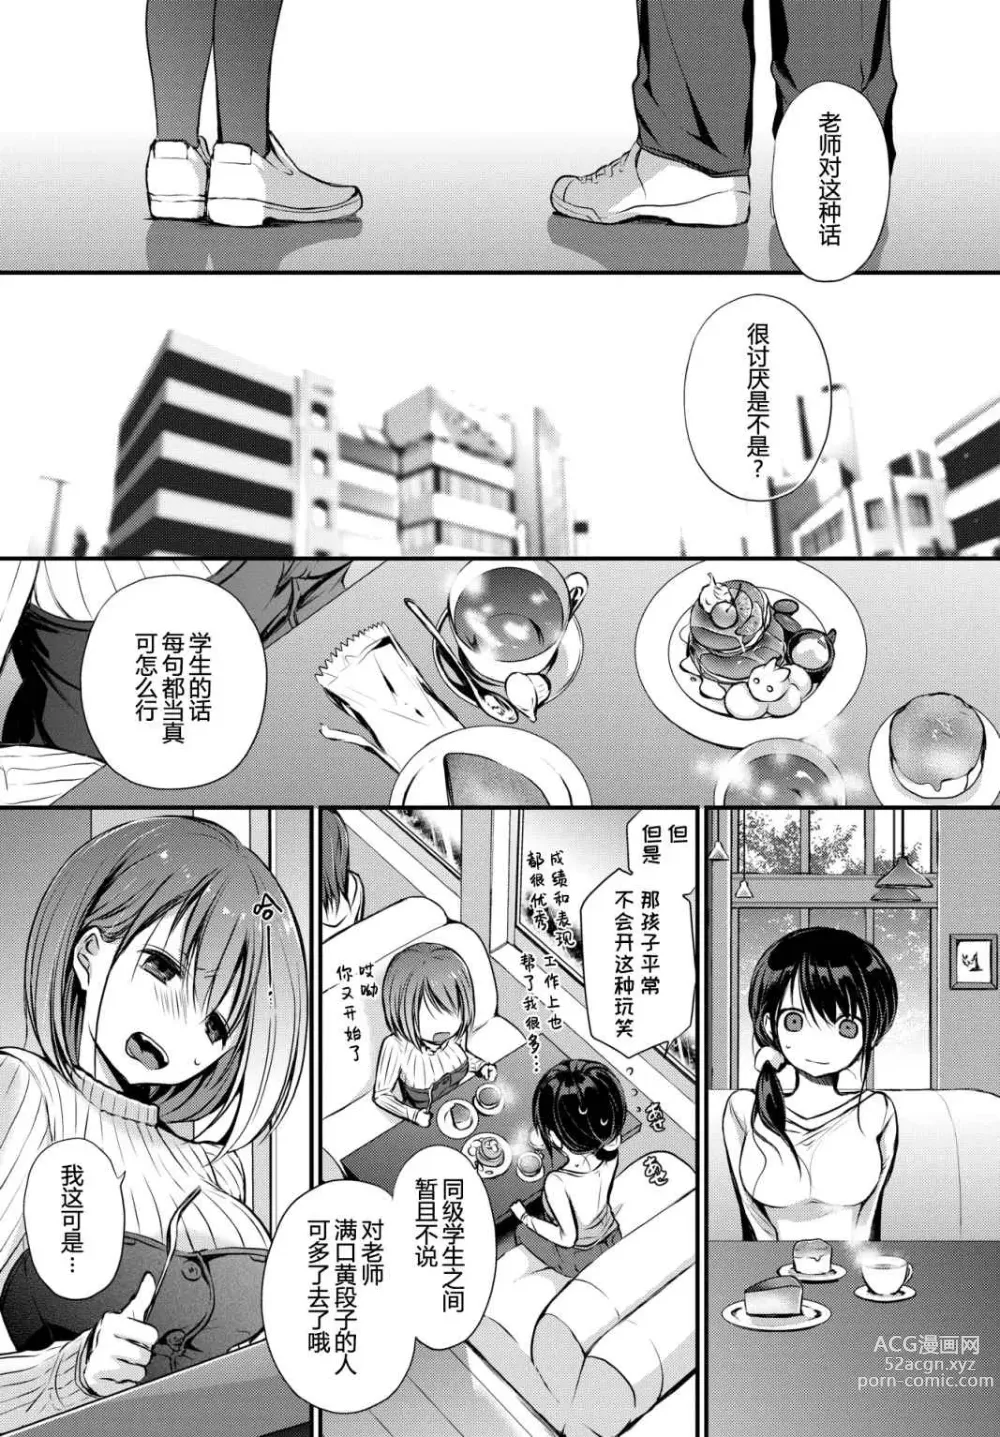 Page 5 of manga Suki No Uragawa (uncensored)